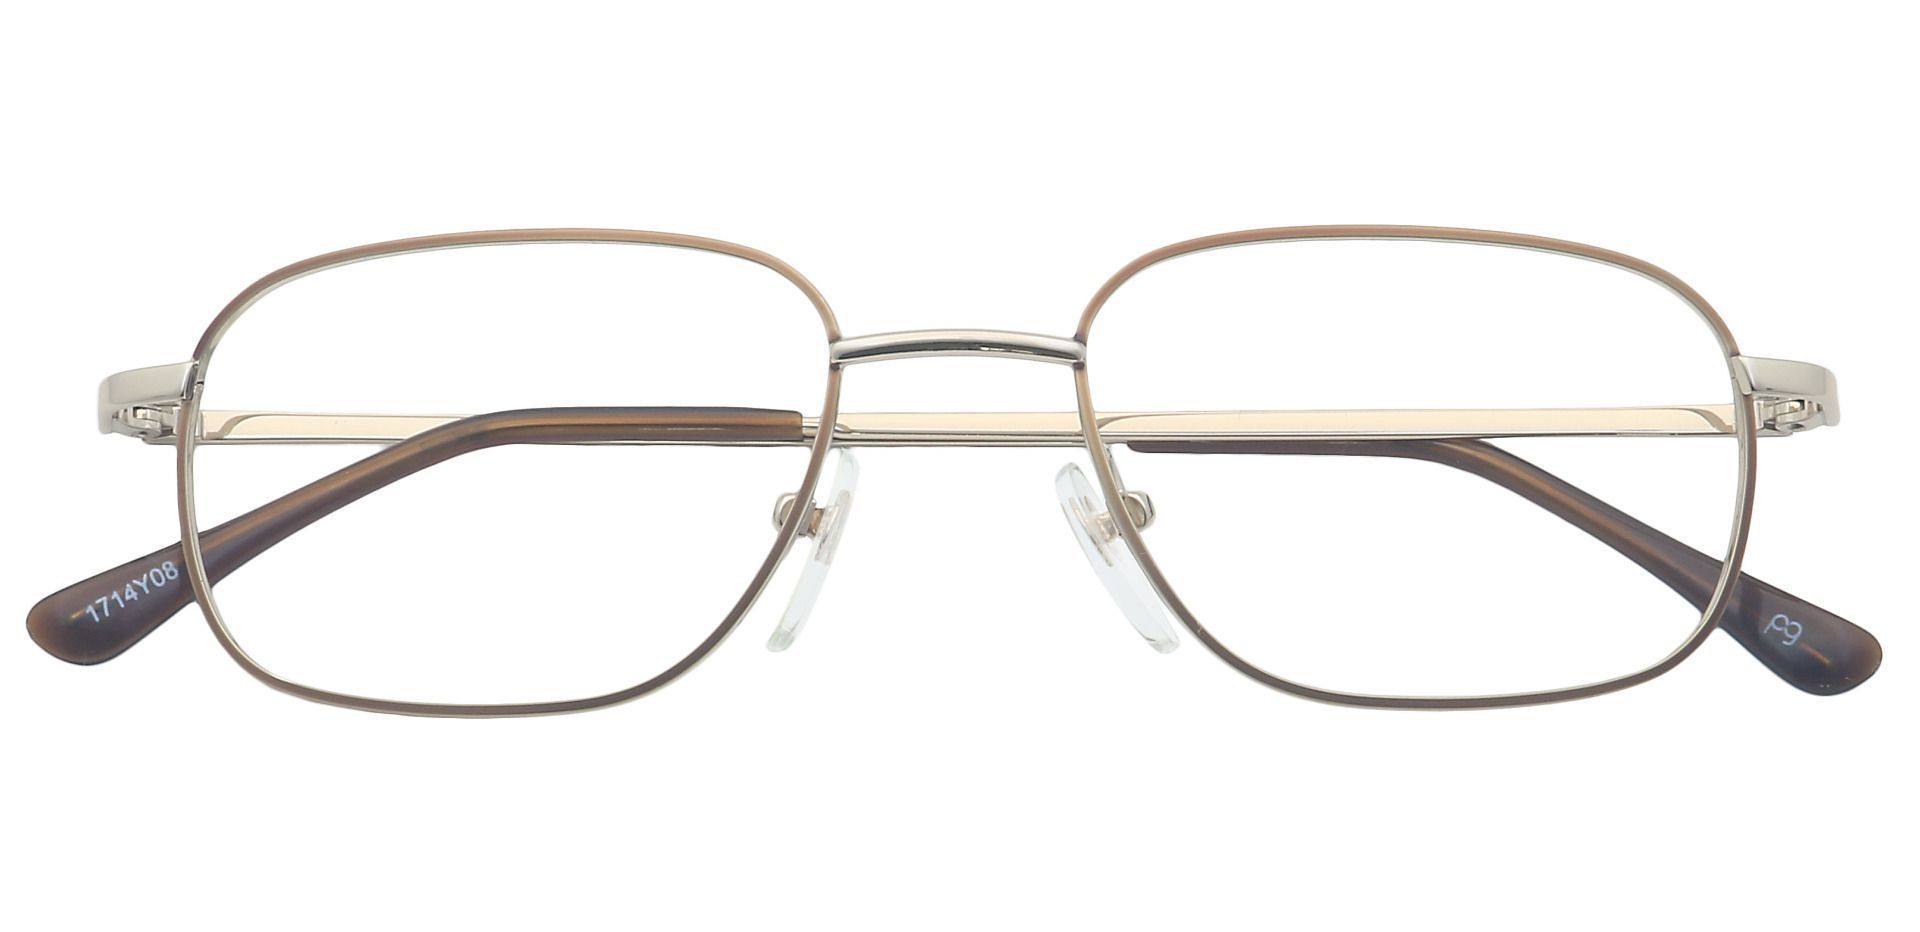 Scott Rectangle Eyeglasses Frame - Yellow